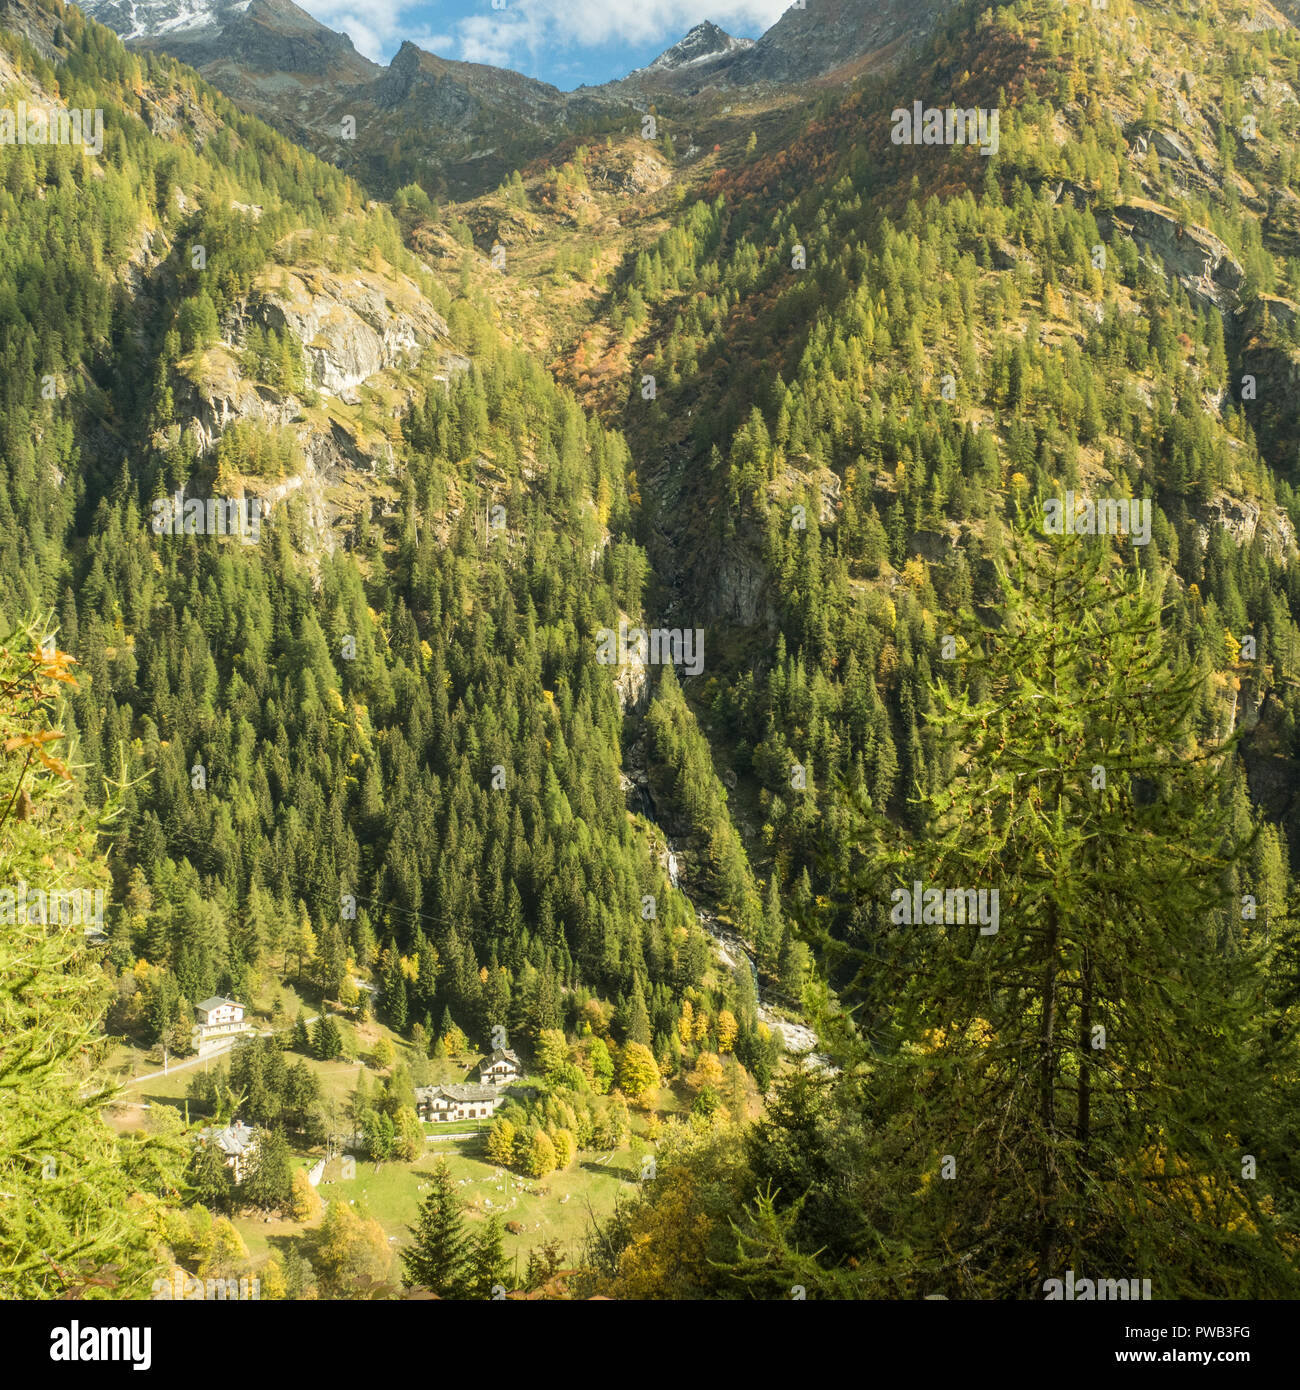 Vista desde Gressoney-Saint-Jean, una aldea en el valle de Gressoney, en la región de Valle de Aosta' NW Italia Foto de stock